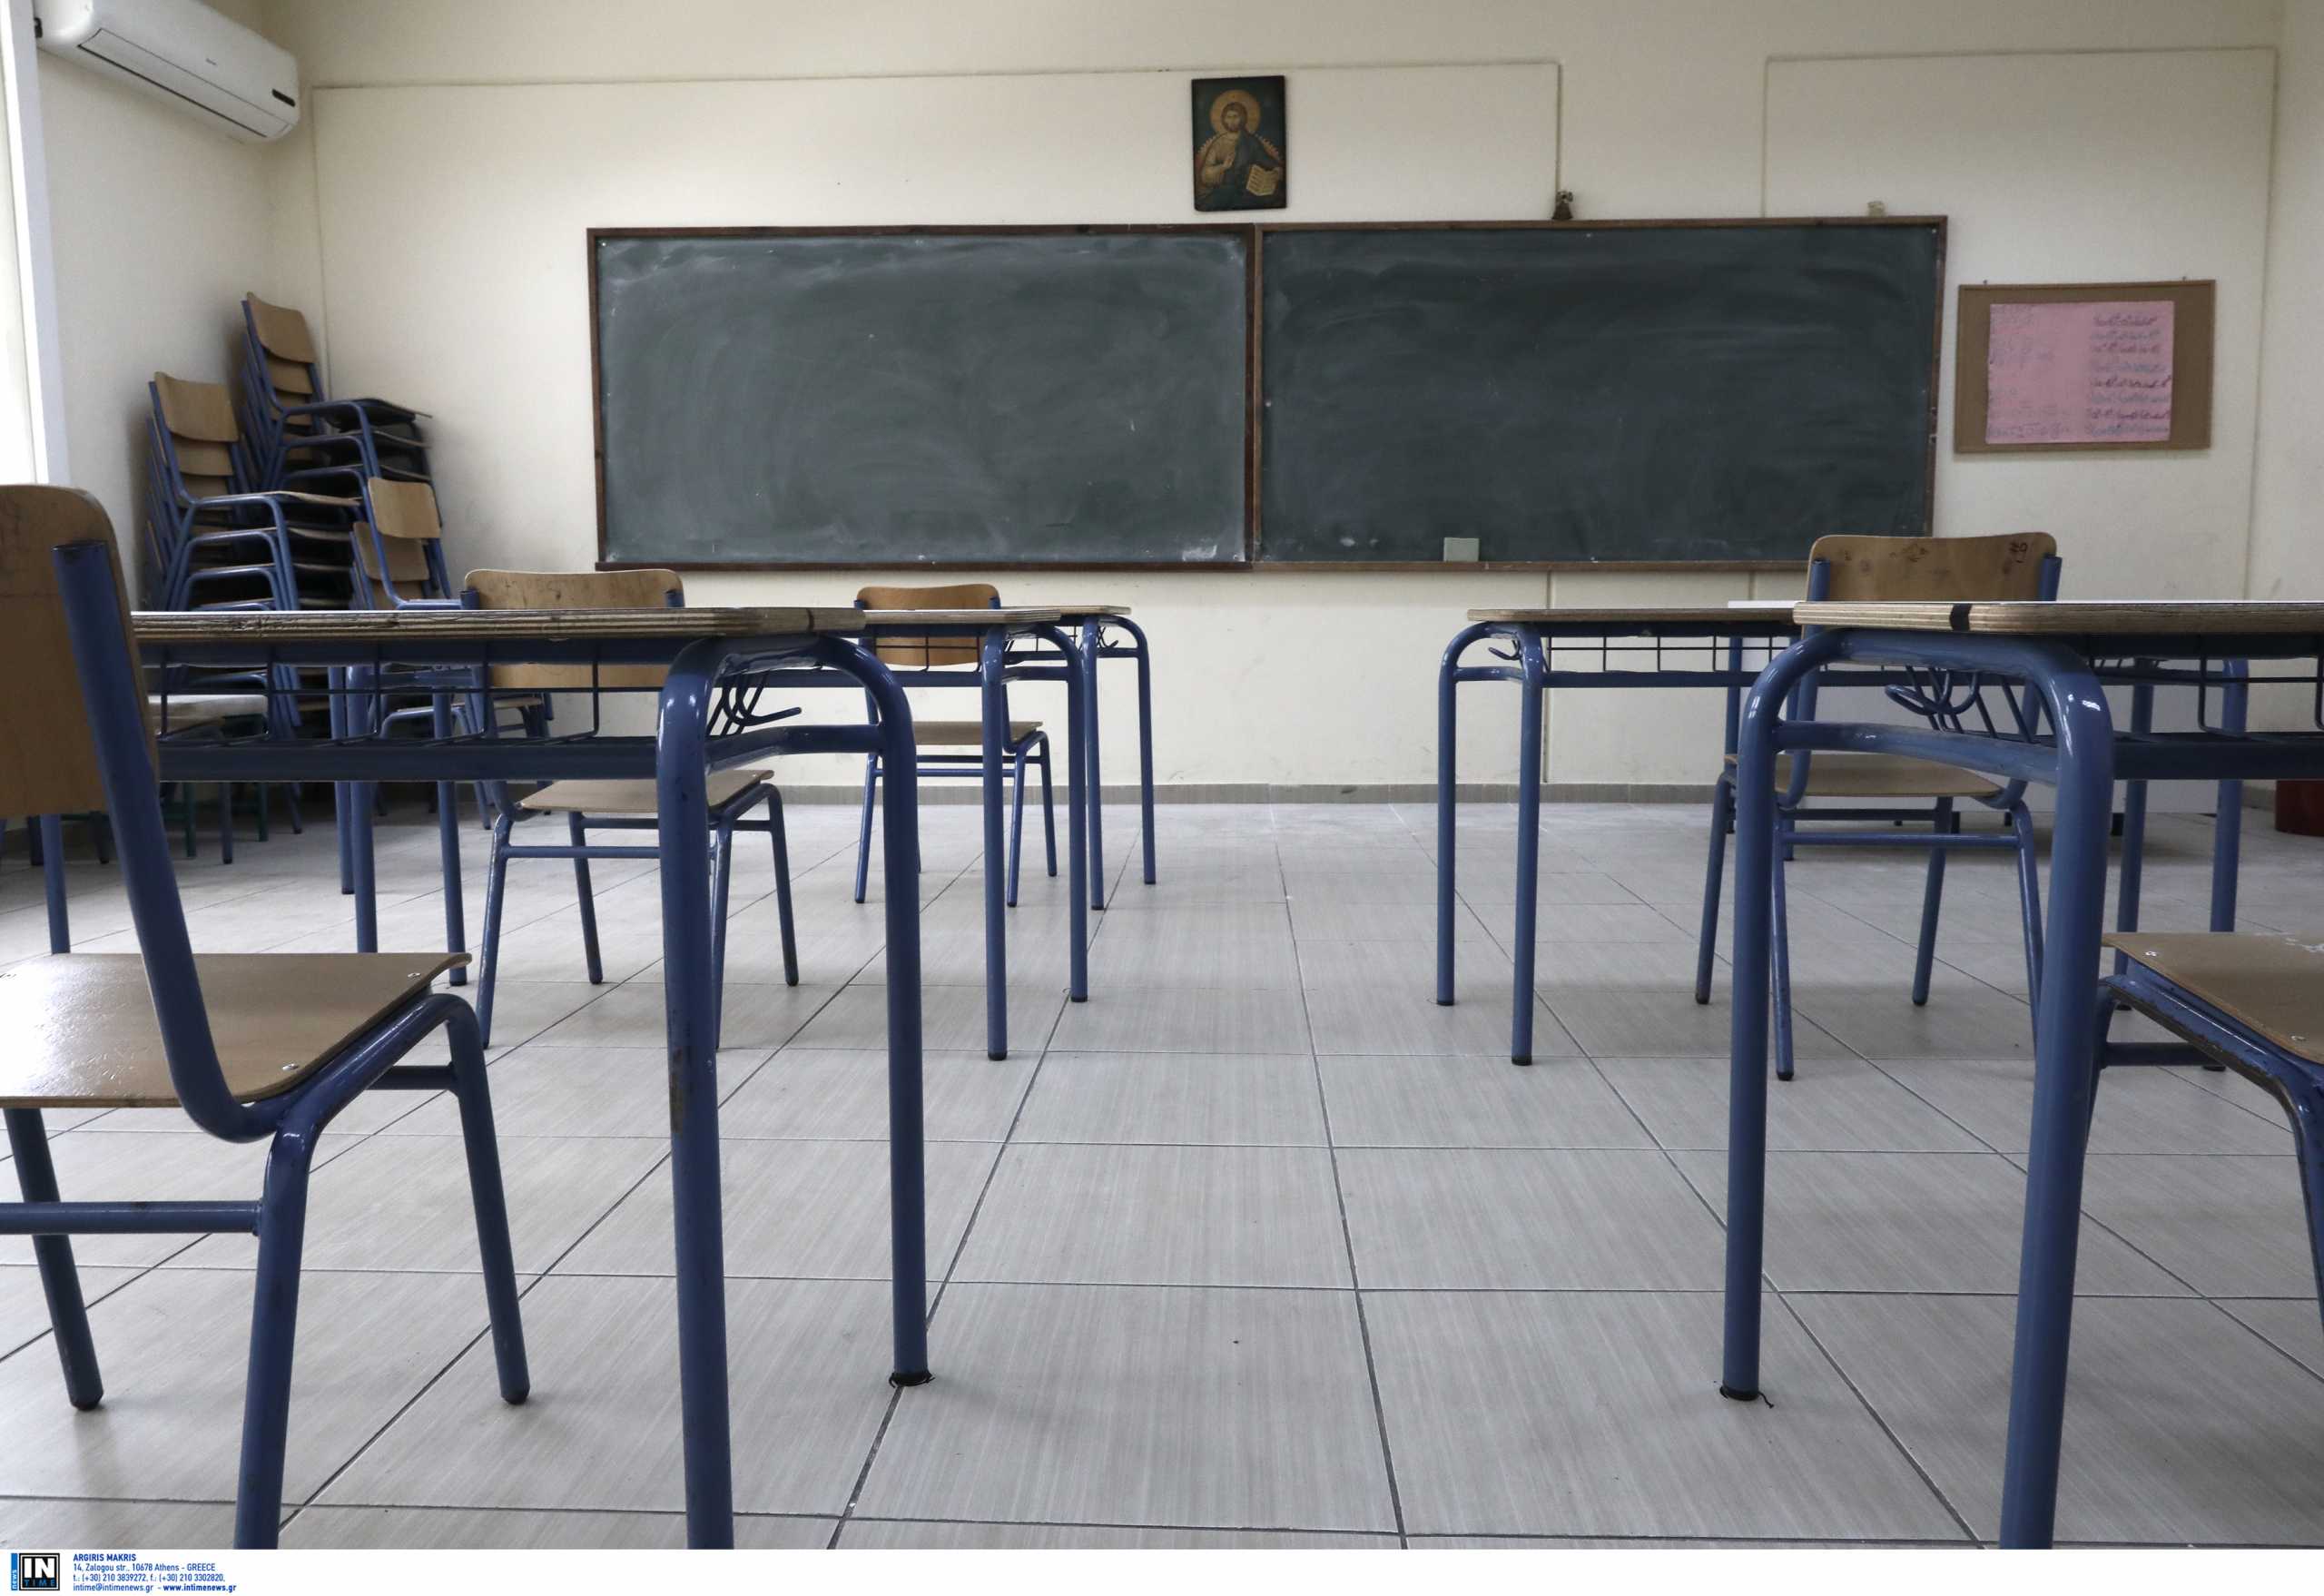 Πήλιο: Έρχονται μηνύσεις για τον άγριο ξυλοδαρμό μαθητή από συμμαθητή του μέσα στο σχολείο